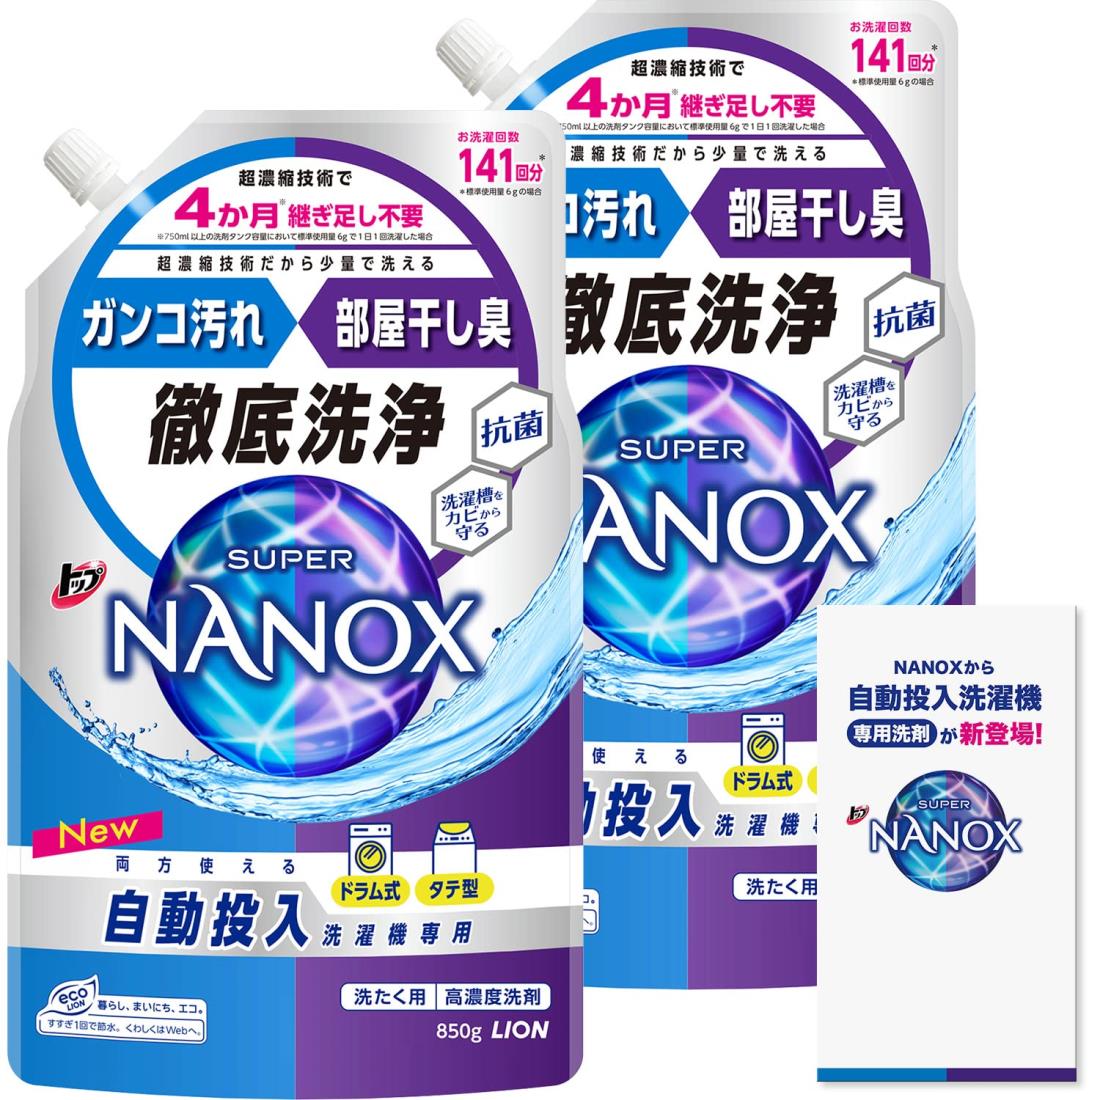 【まとめ買い 大容量】 トップ ナノックス NANOX トップ スーパーナノックス 自動投入洗濯機専用 洗濯洗剤 液体 詰め替え 850g 2個セット リーフレット付き